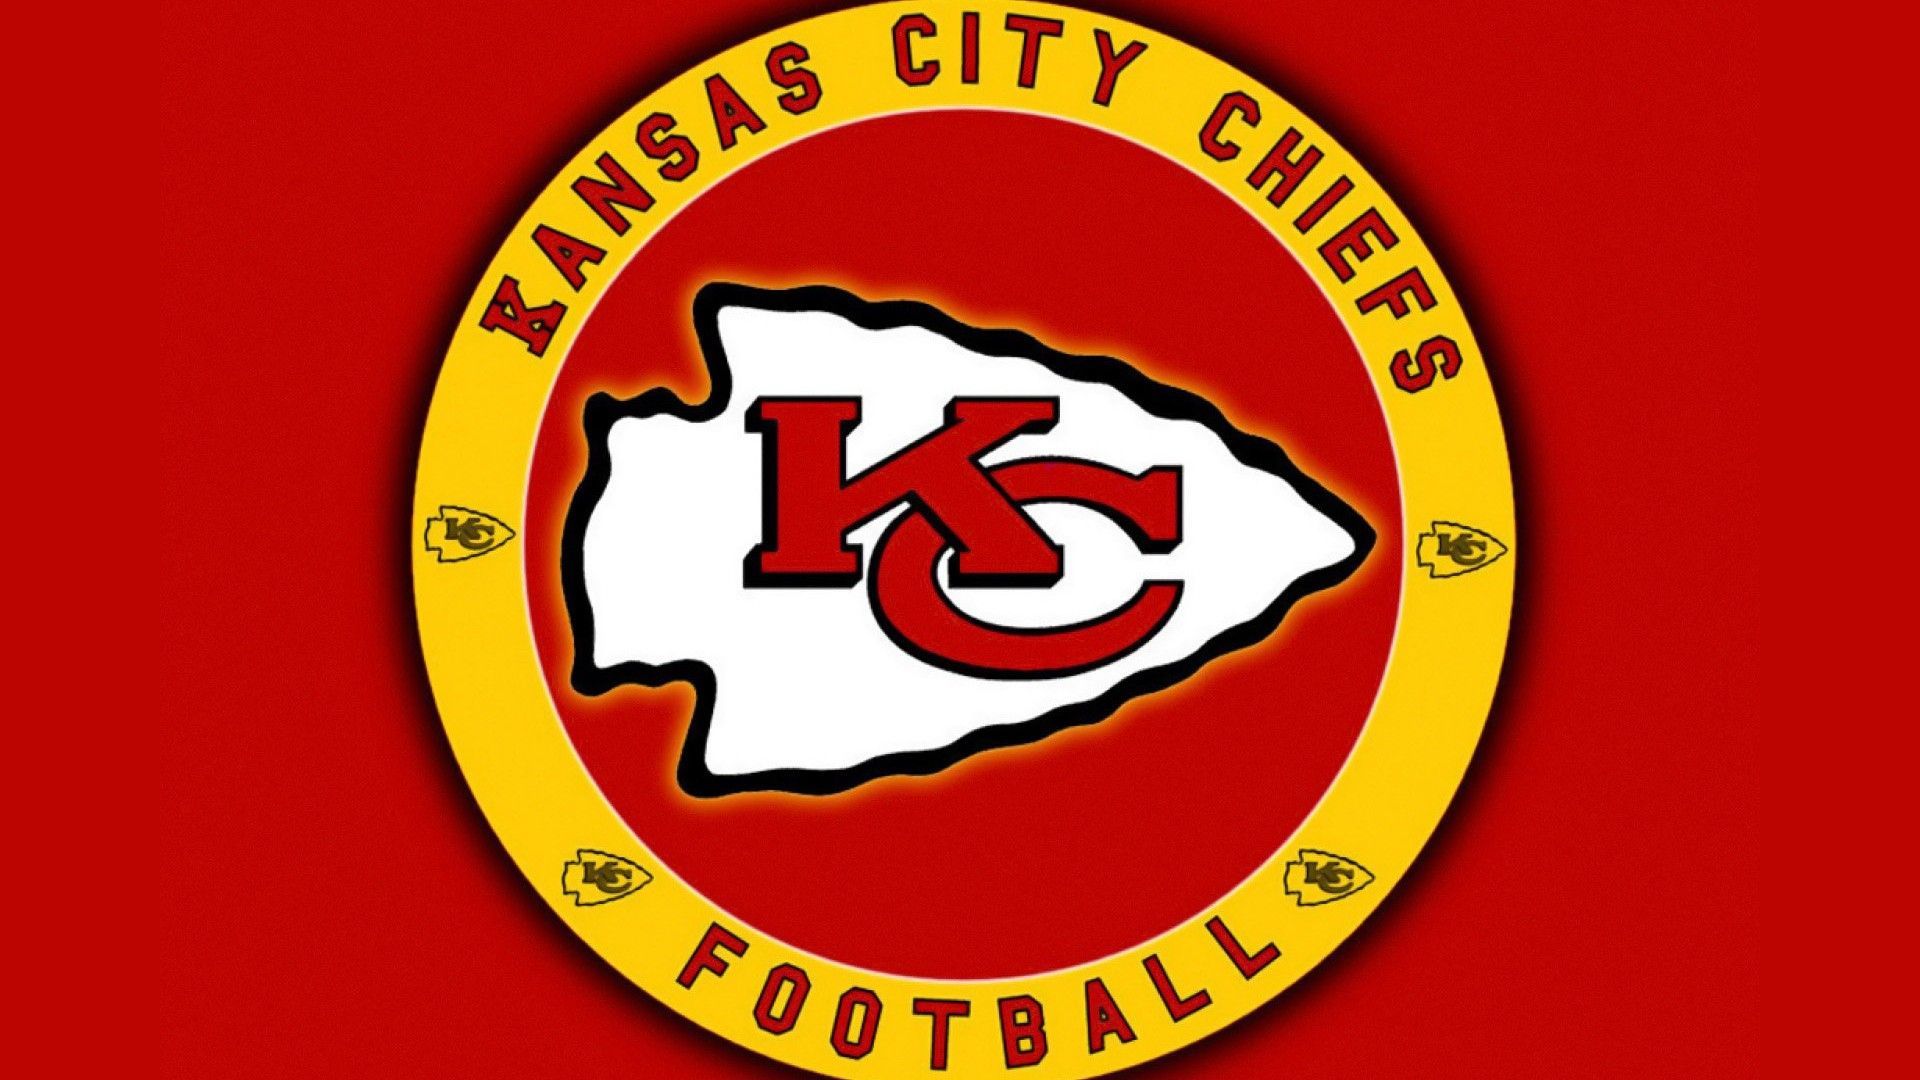 Wallpaper Kansas City Chiefs NFL NFL Football Wallpaper. Kansas city chiefs logo, Chiefs logo, Kansas city chiefs